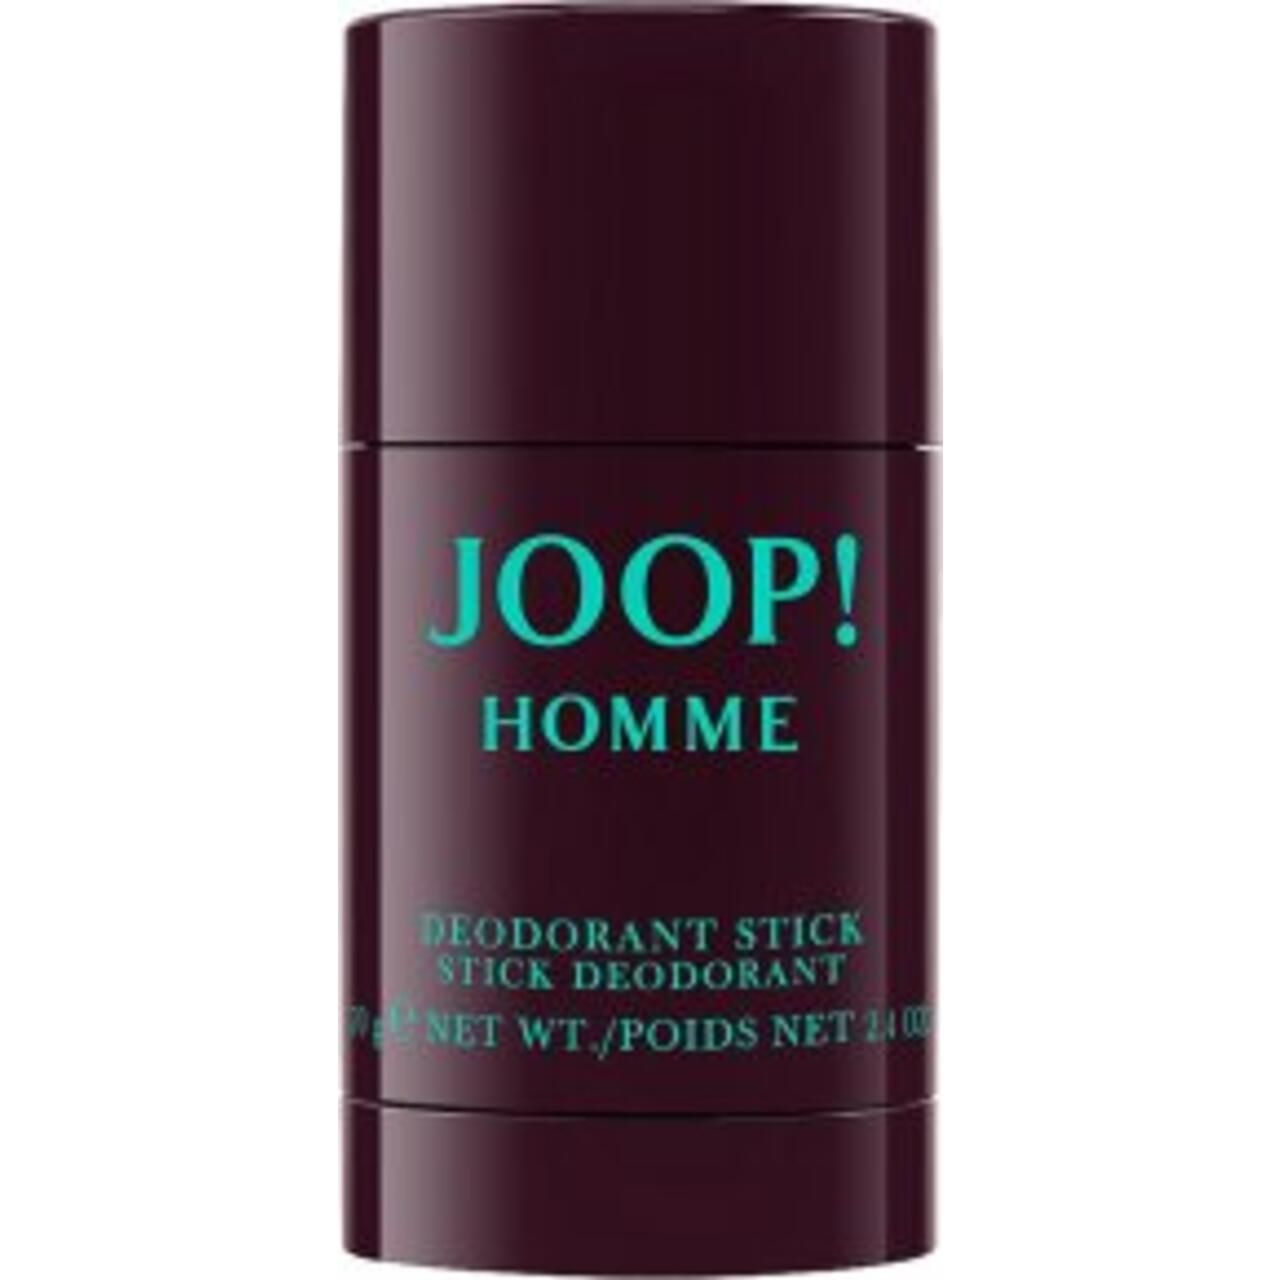 Joop!, Homme Deodorant Stick